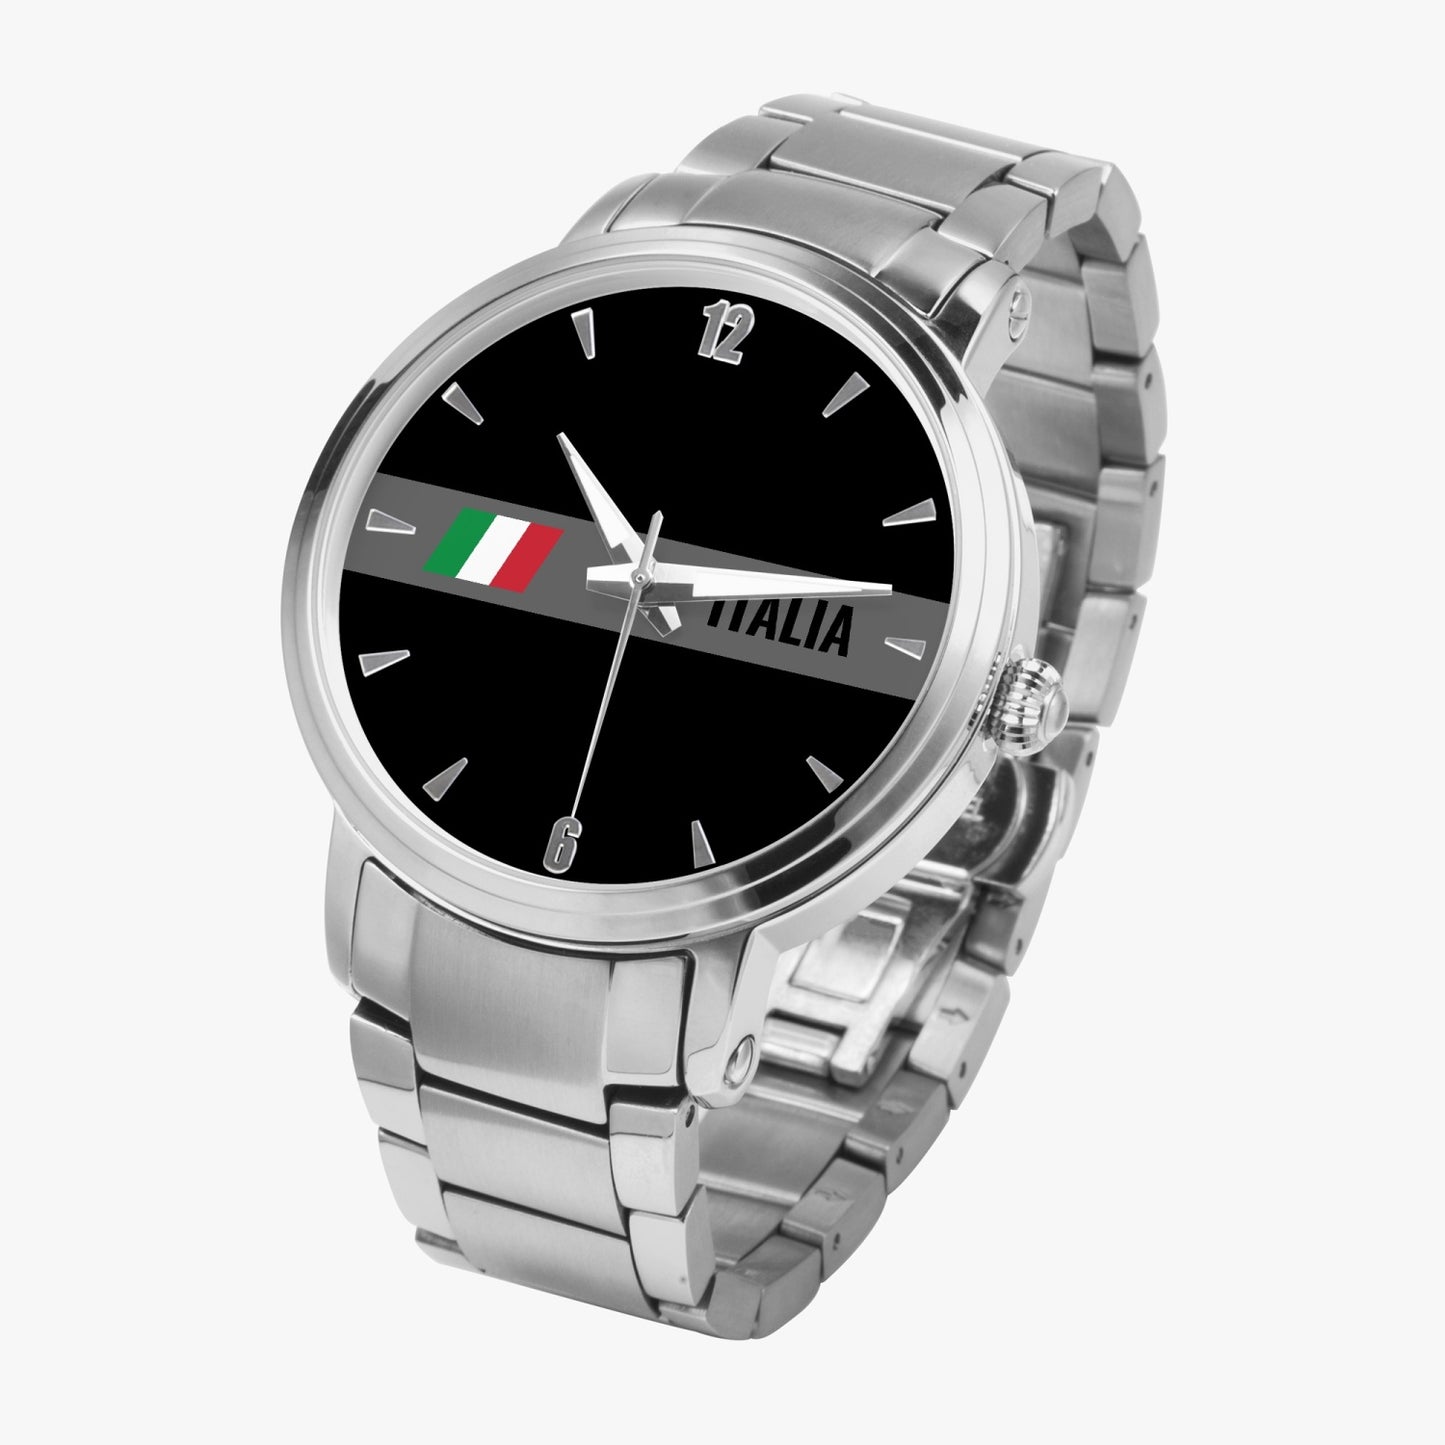 Orologio Movimento Automatico Italia Nero - Acciaio Inossidabile Premium